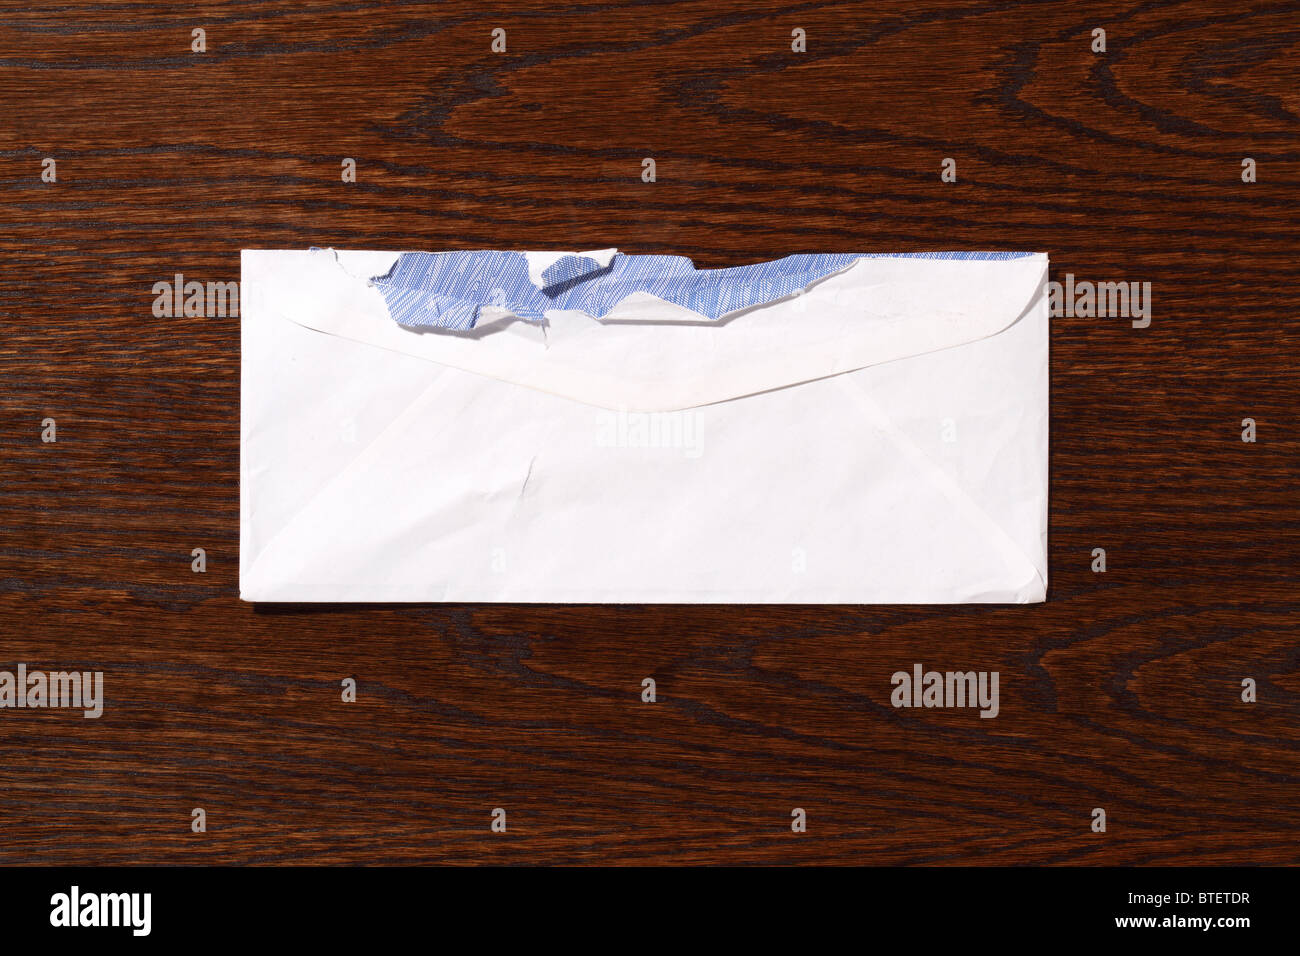 Une enveloppe postale postal utilisé à ouvrir. Un bois marron foncé 24 contexte Banque D'Images